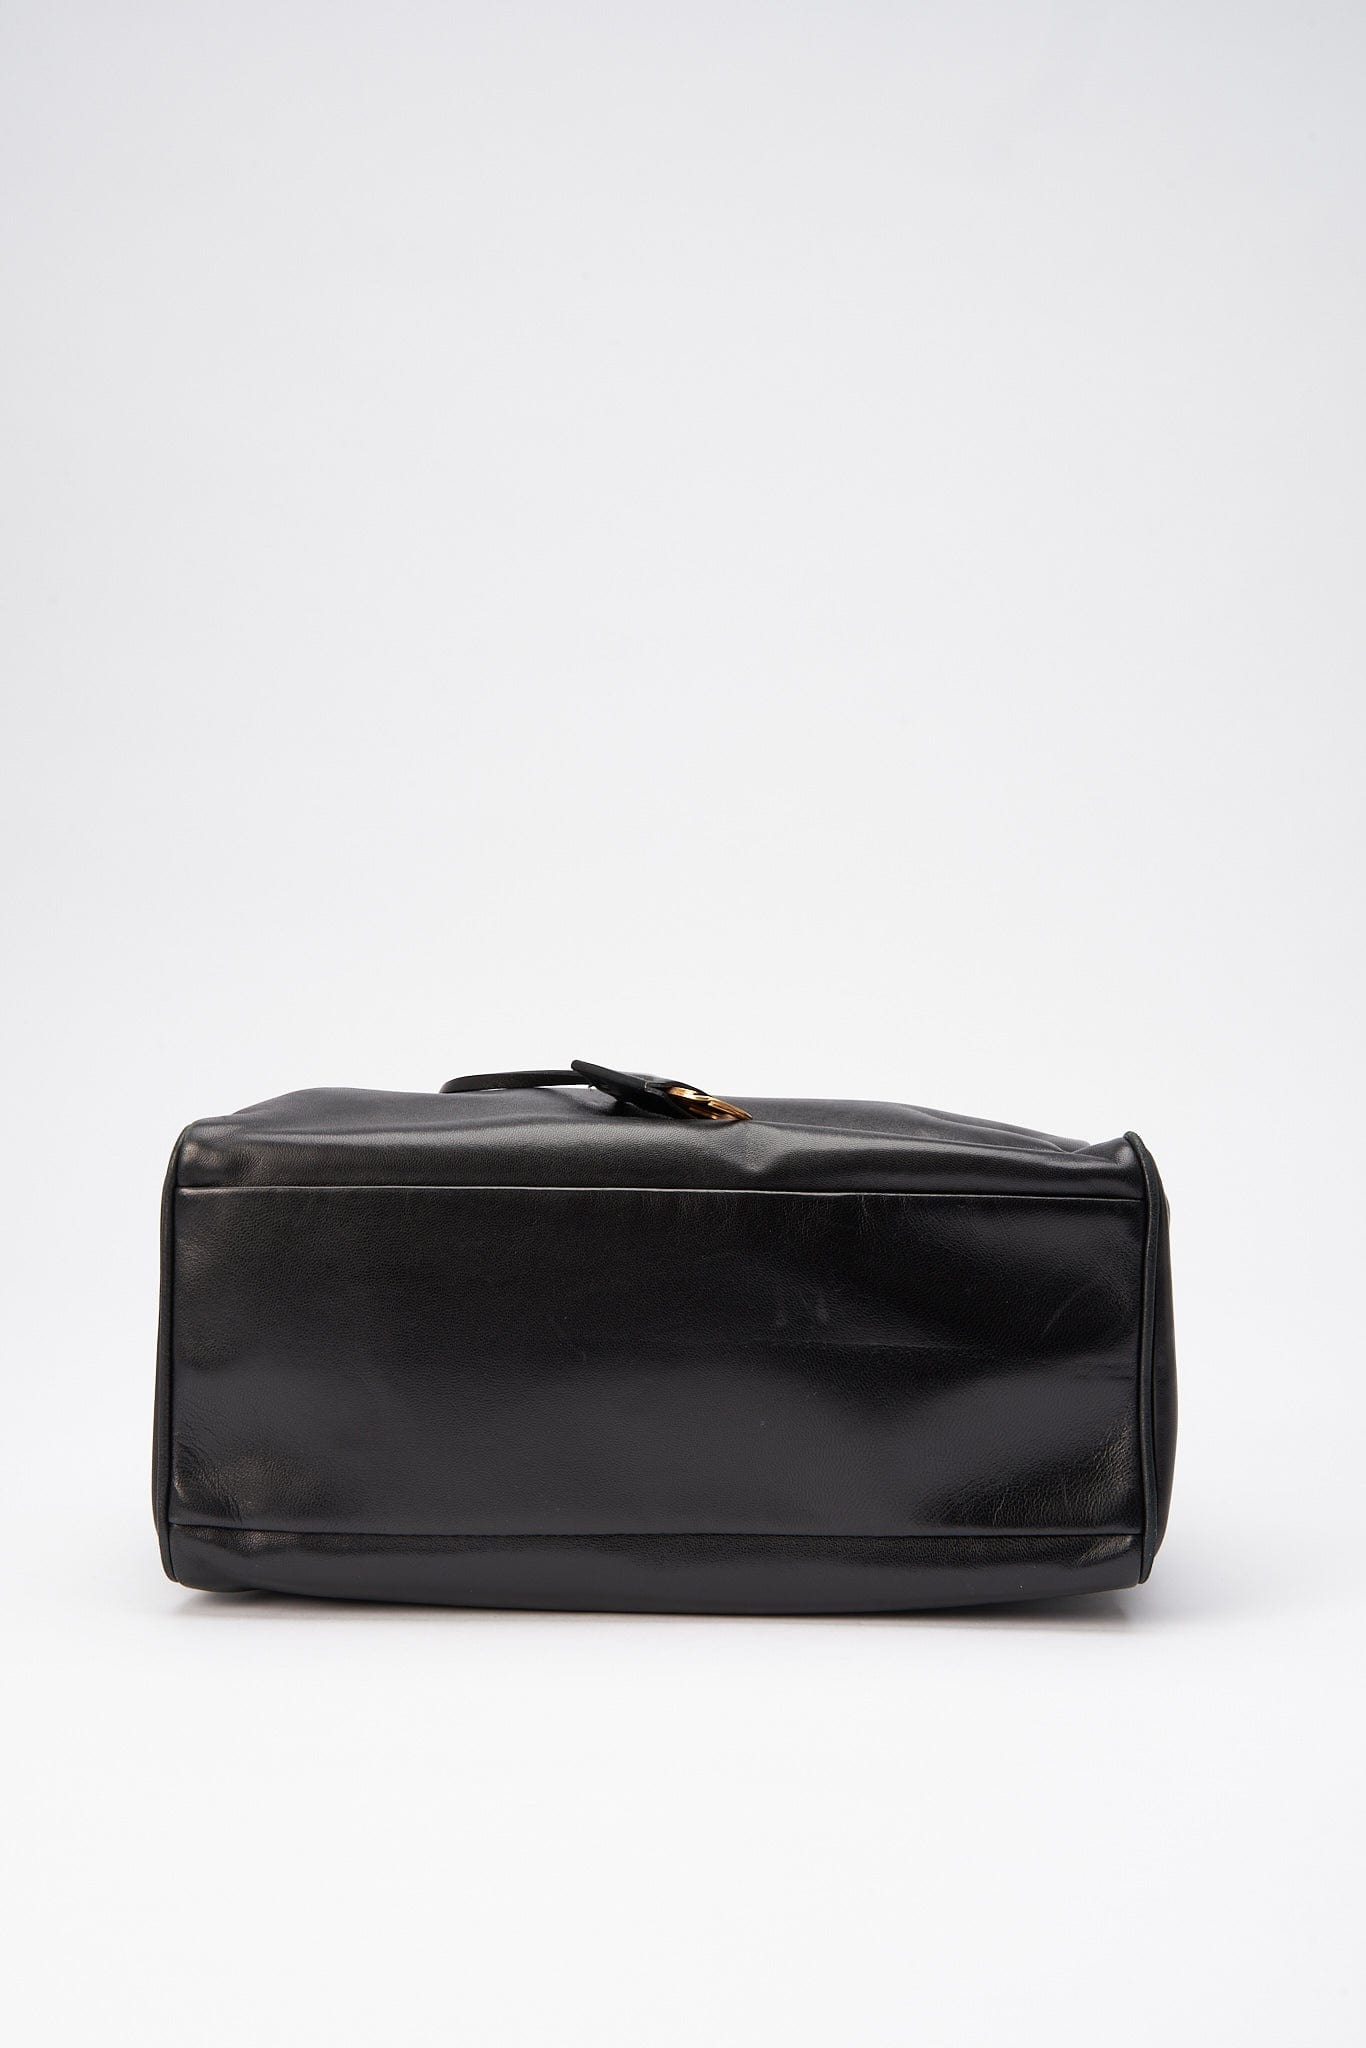 Prada Black Leather Shoulder Bag 1819